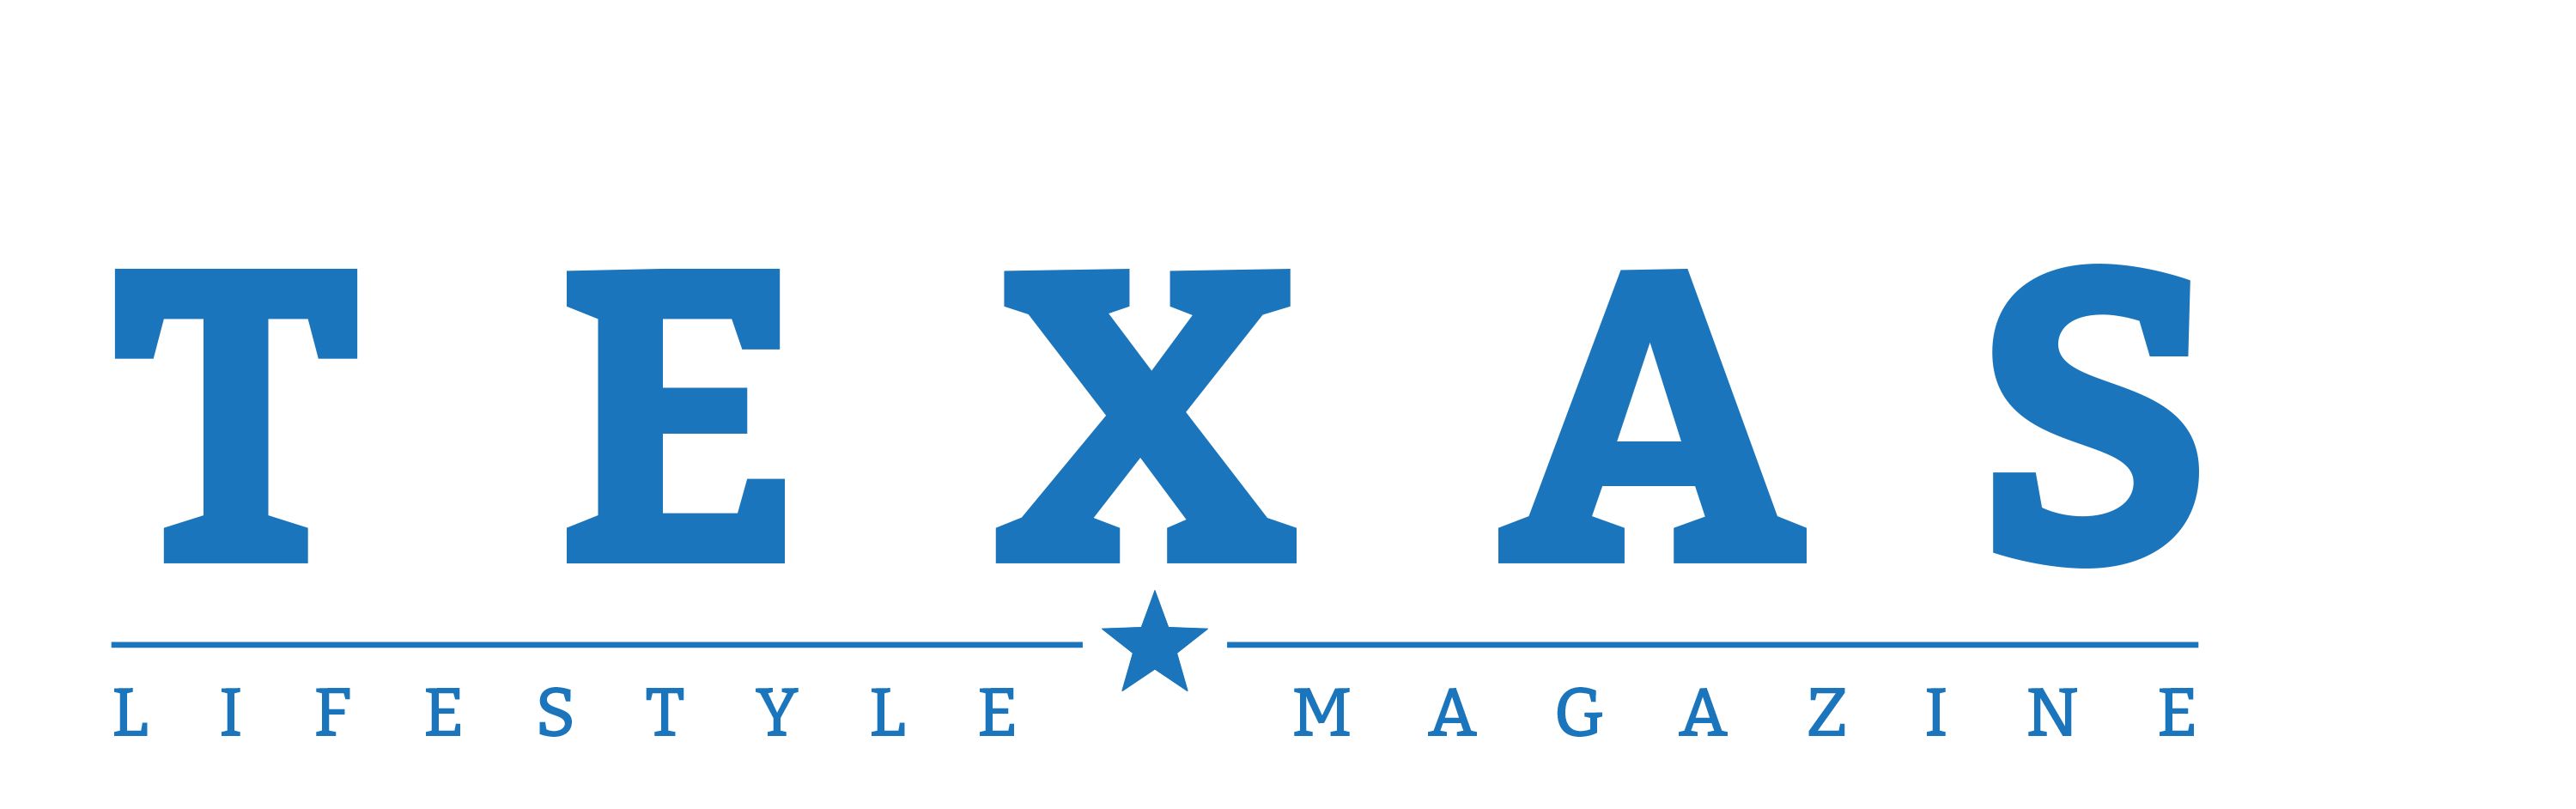 texas lifestyle magazine